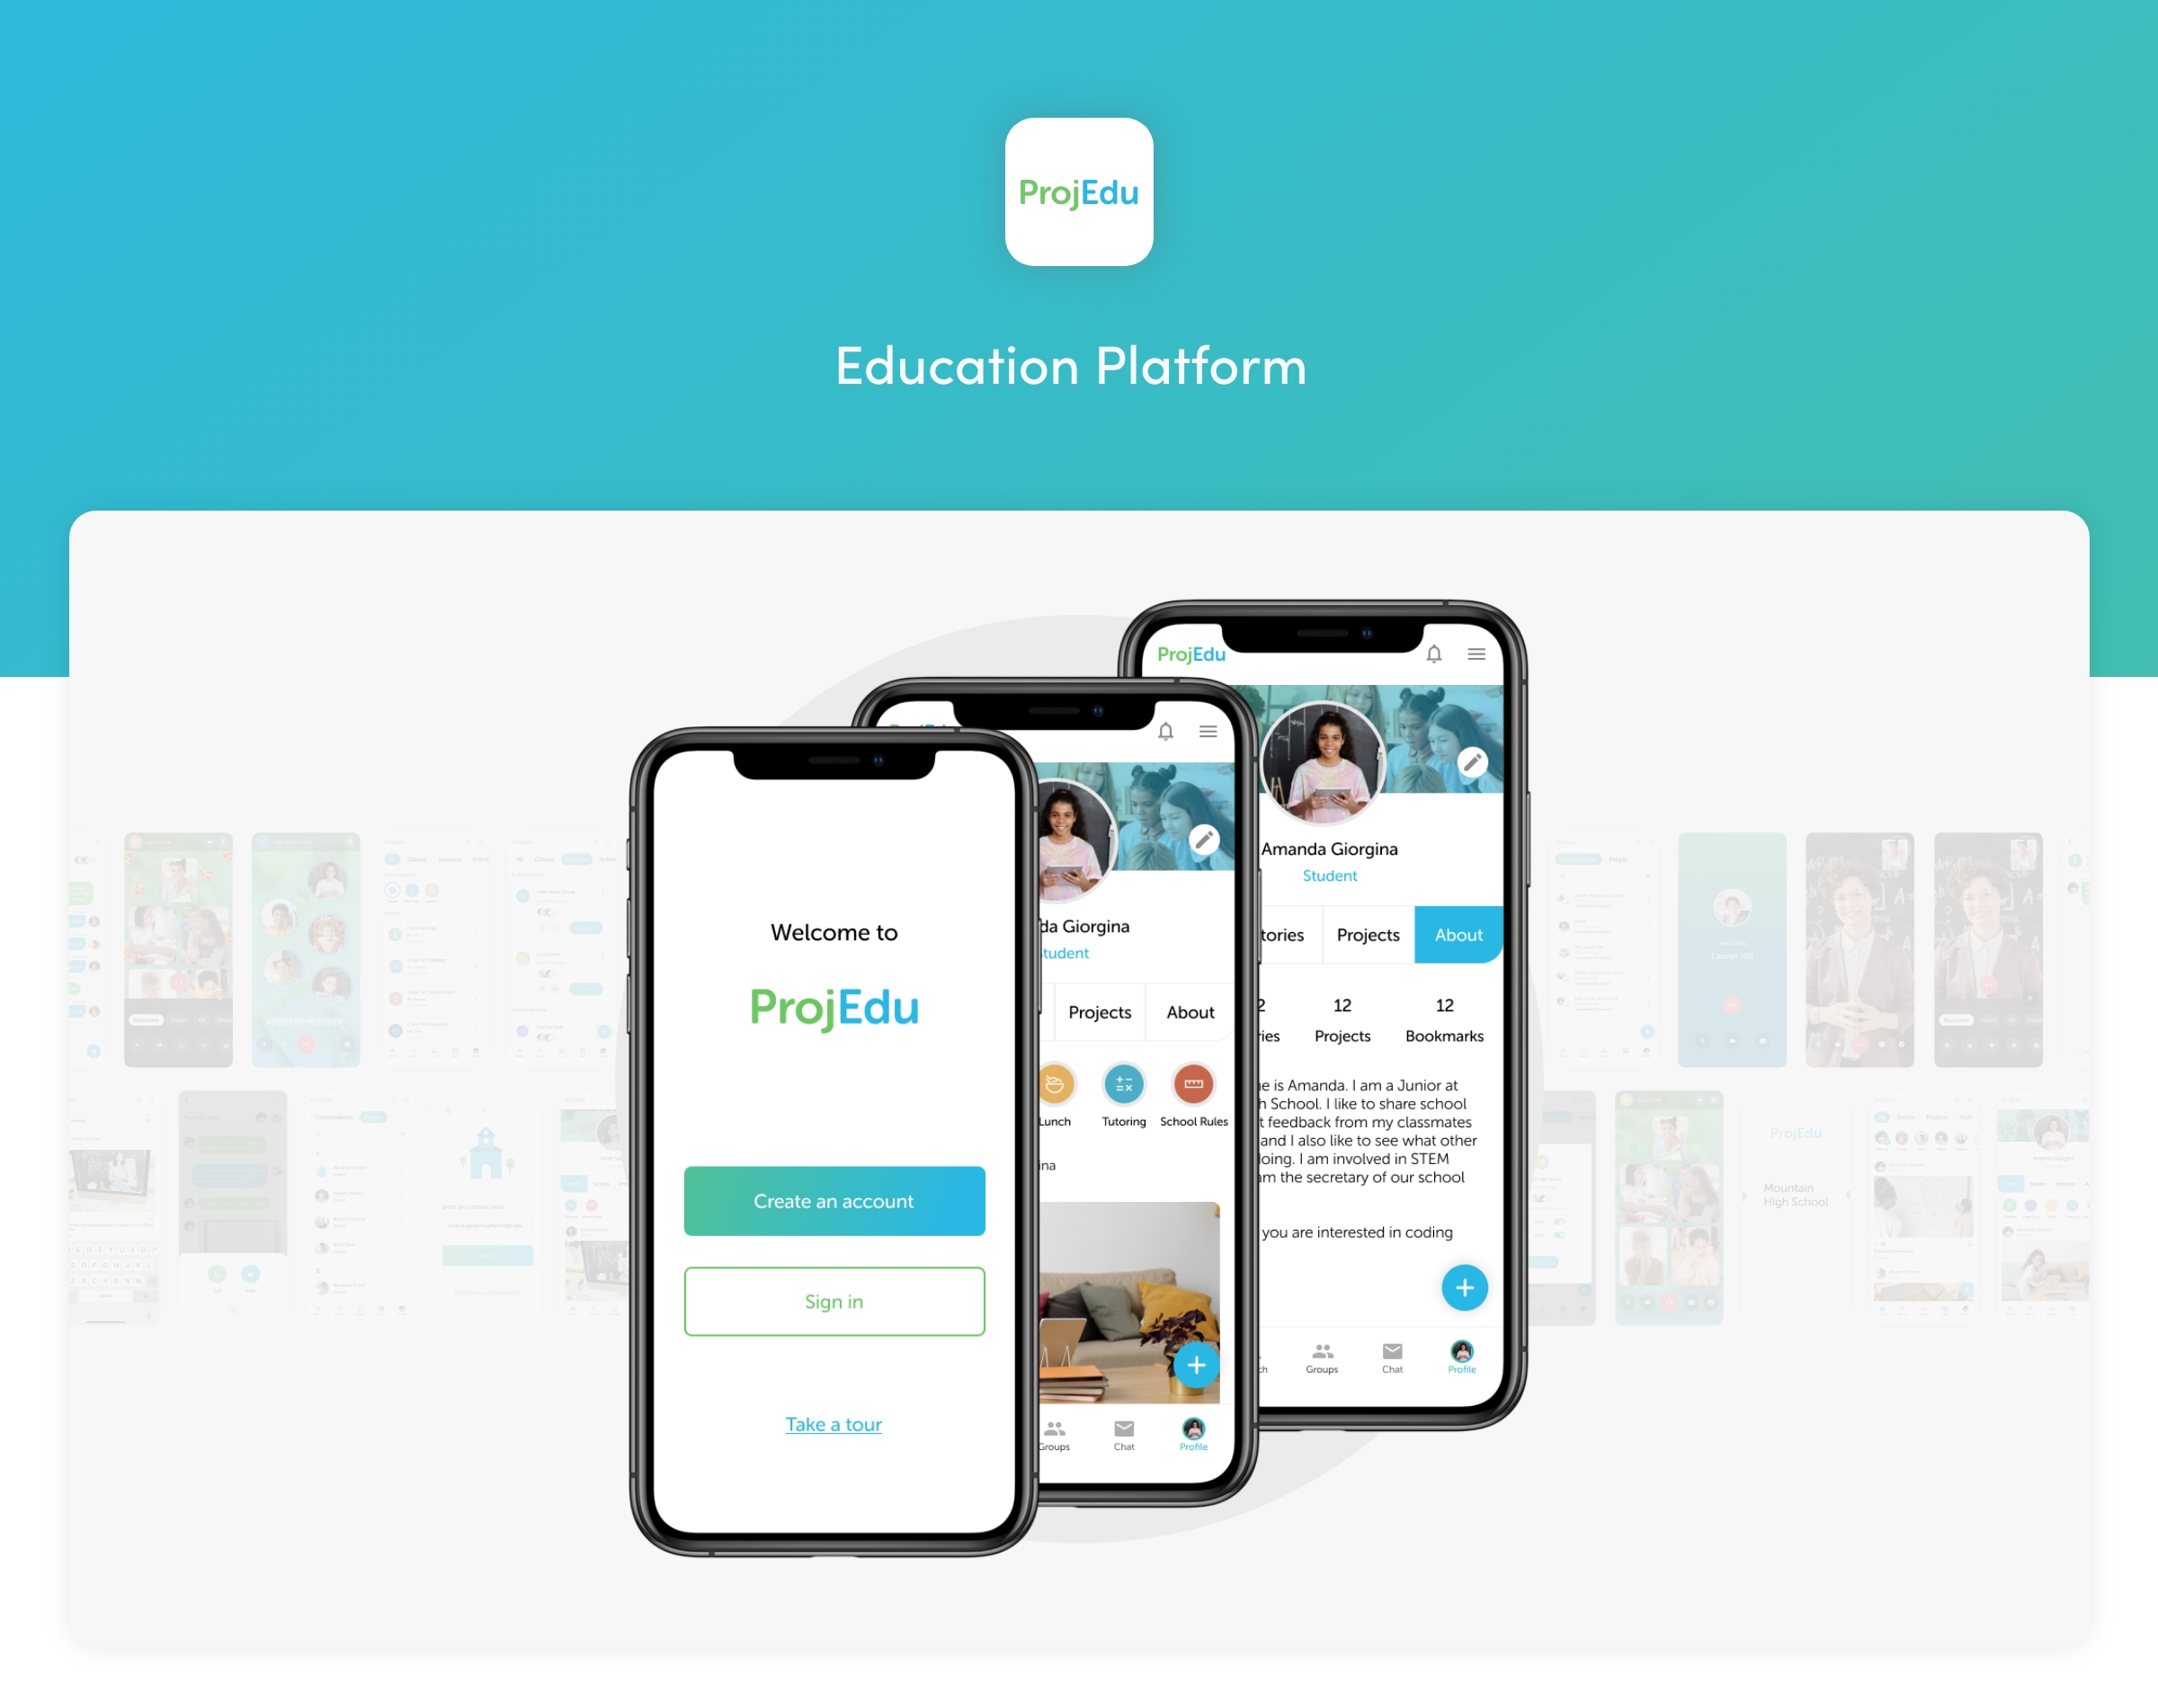 Design of a mobile platform for education.